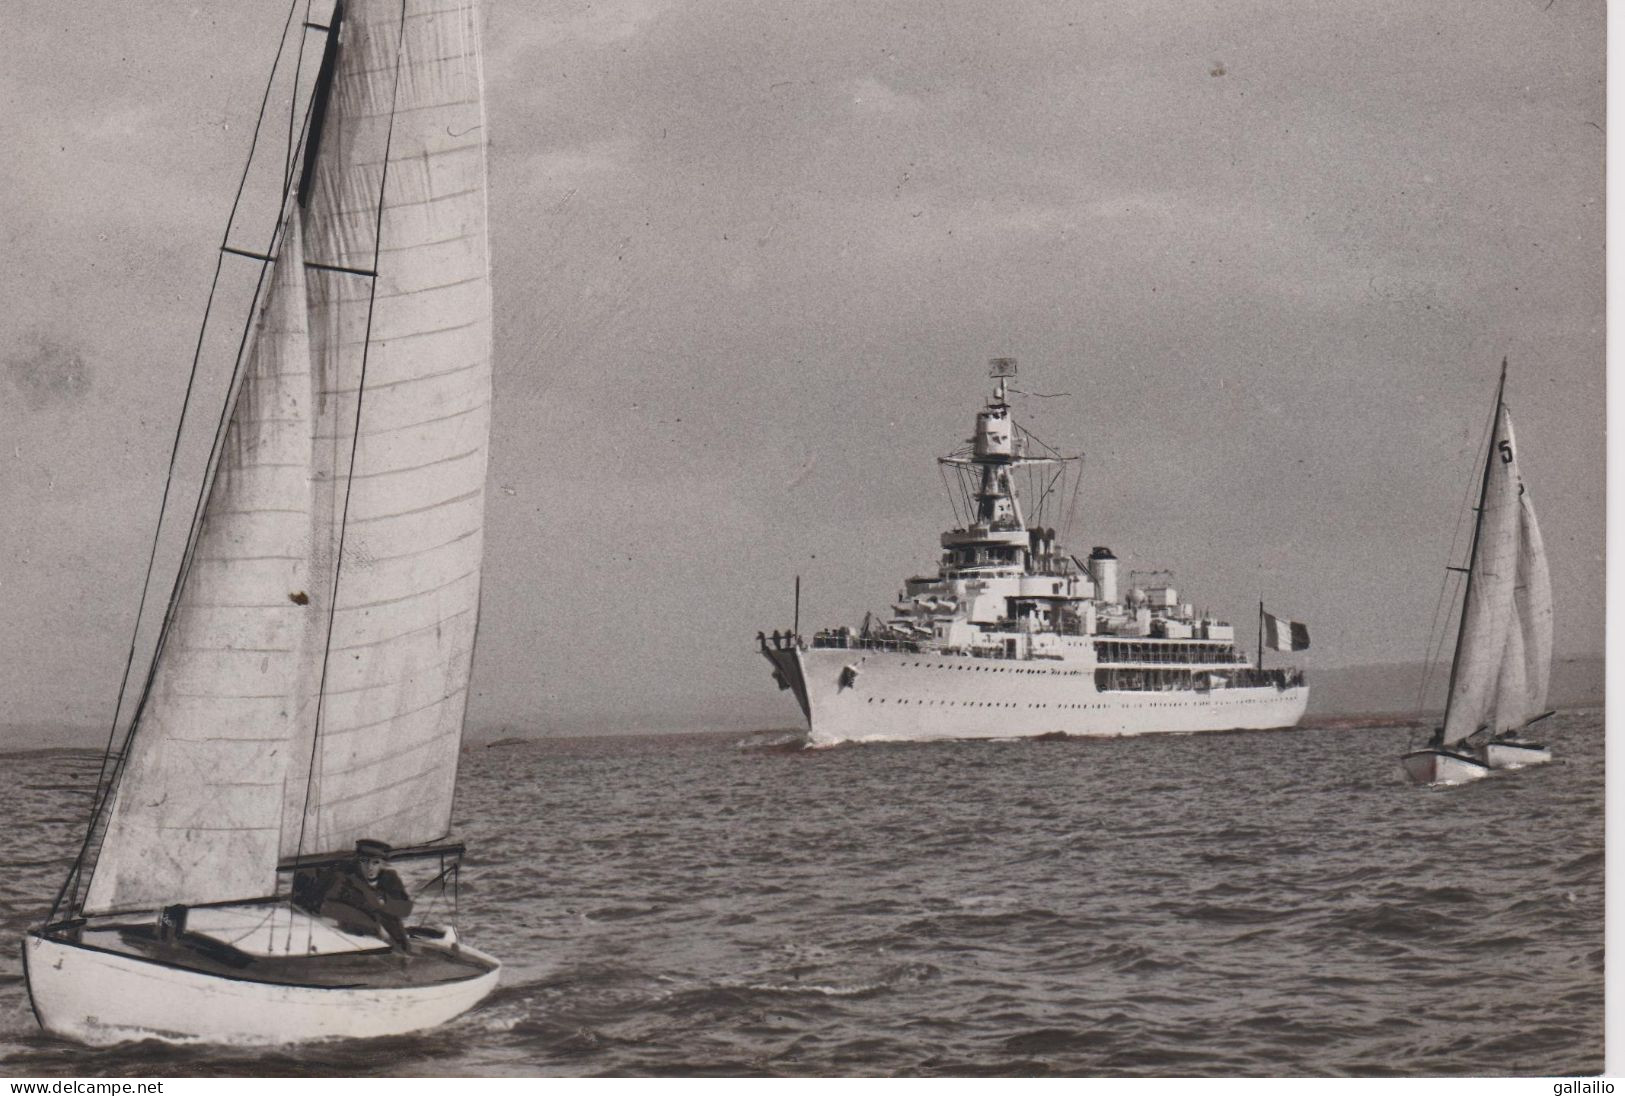 PHOTO PRESSE LE CROISEUR JEANNE D'ARC A D P PHOTO FORMAT 18 X 13 CMS - Boats